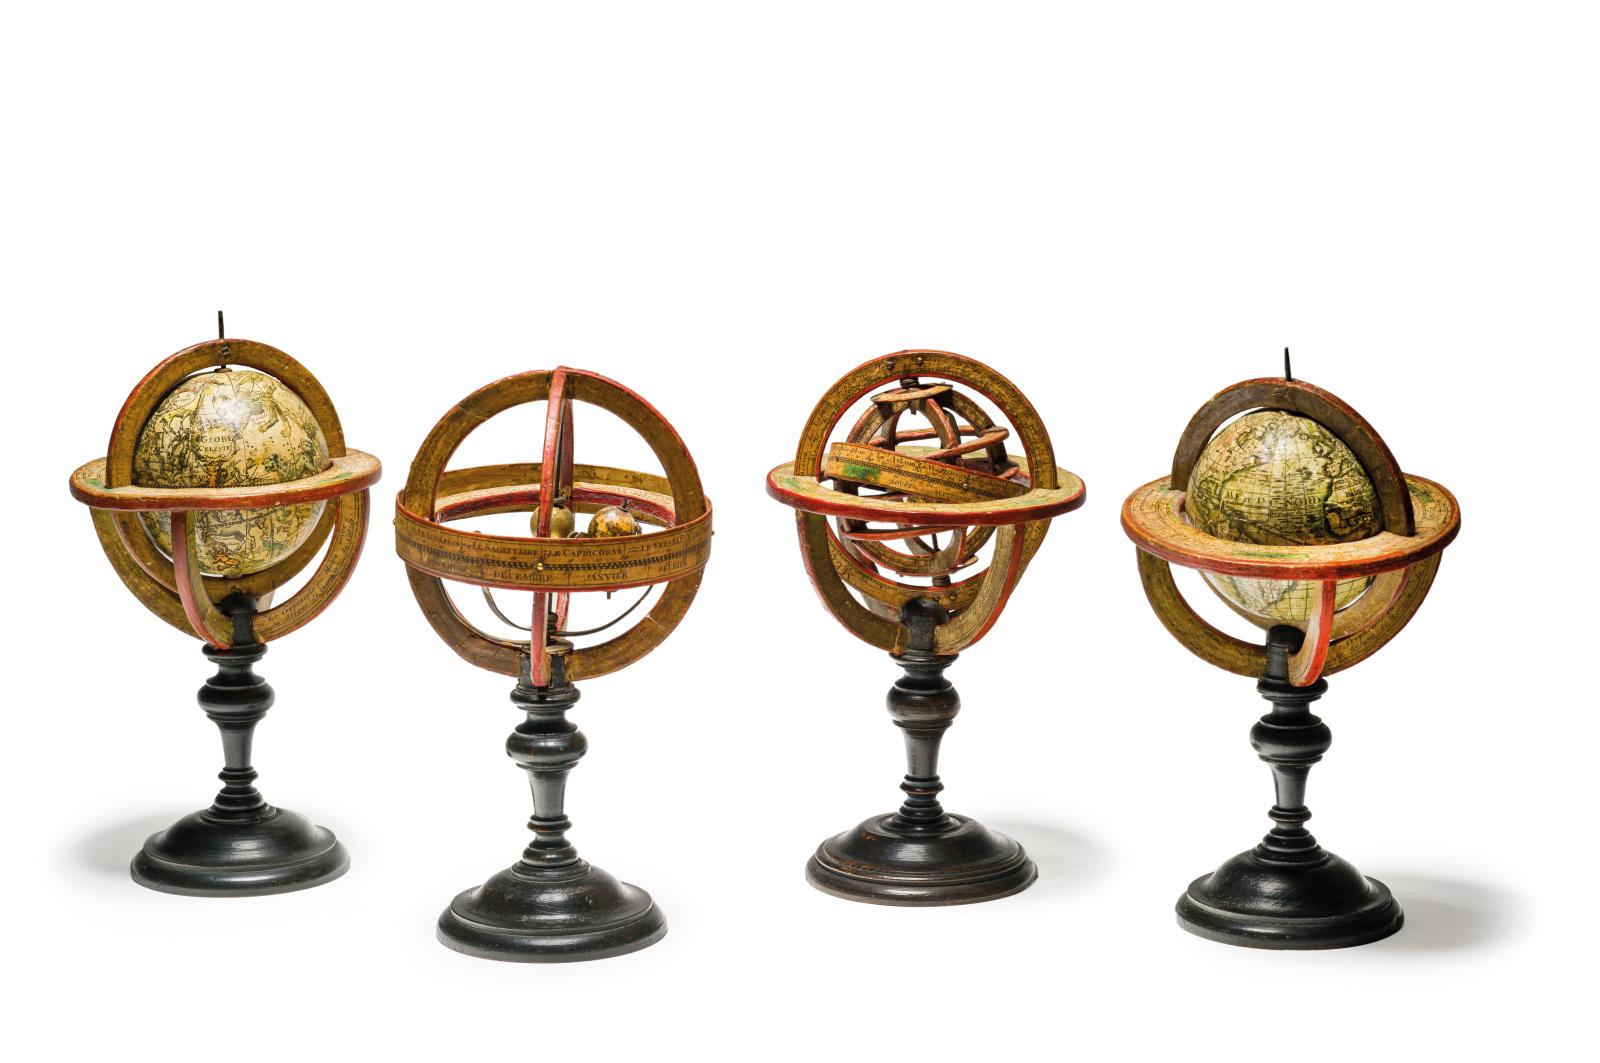 Loysel, Paris, fin du XVIIIe siècle. Ensemble de quatre sphères de bibliothèque daté 1793 dans un cartouche, en carton bouilli, papier gravé et bois n